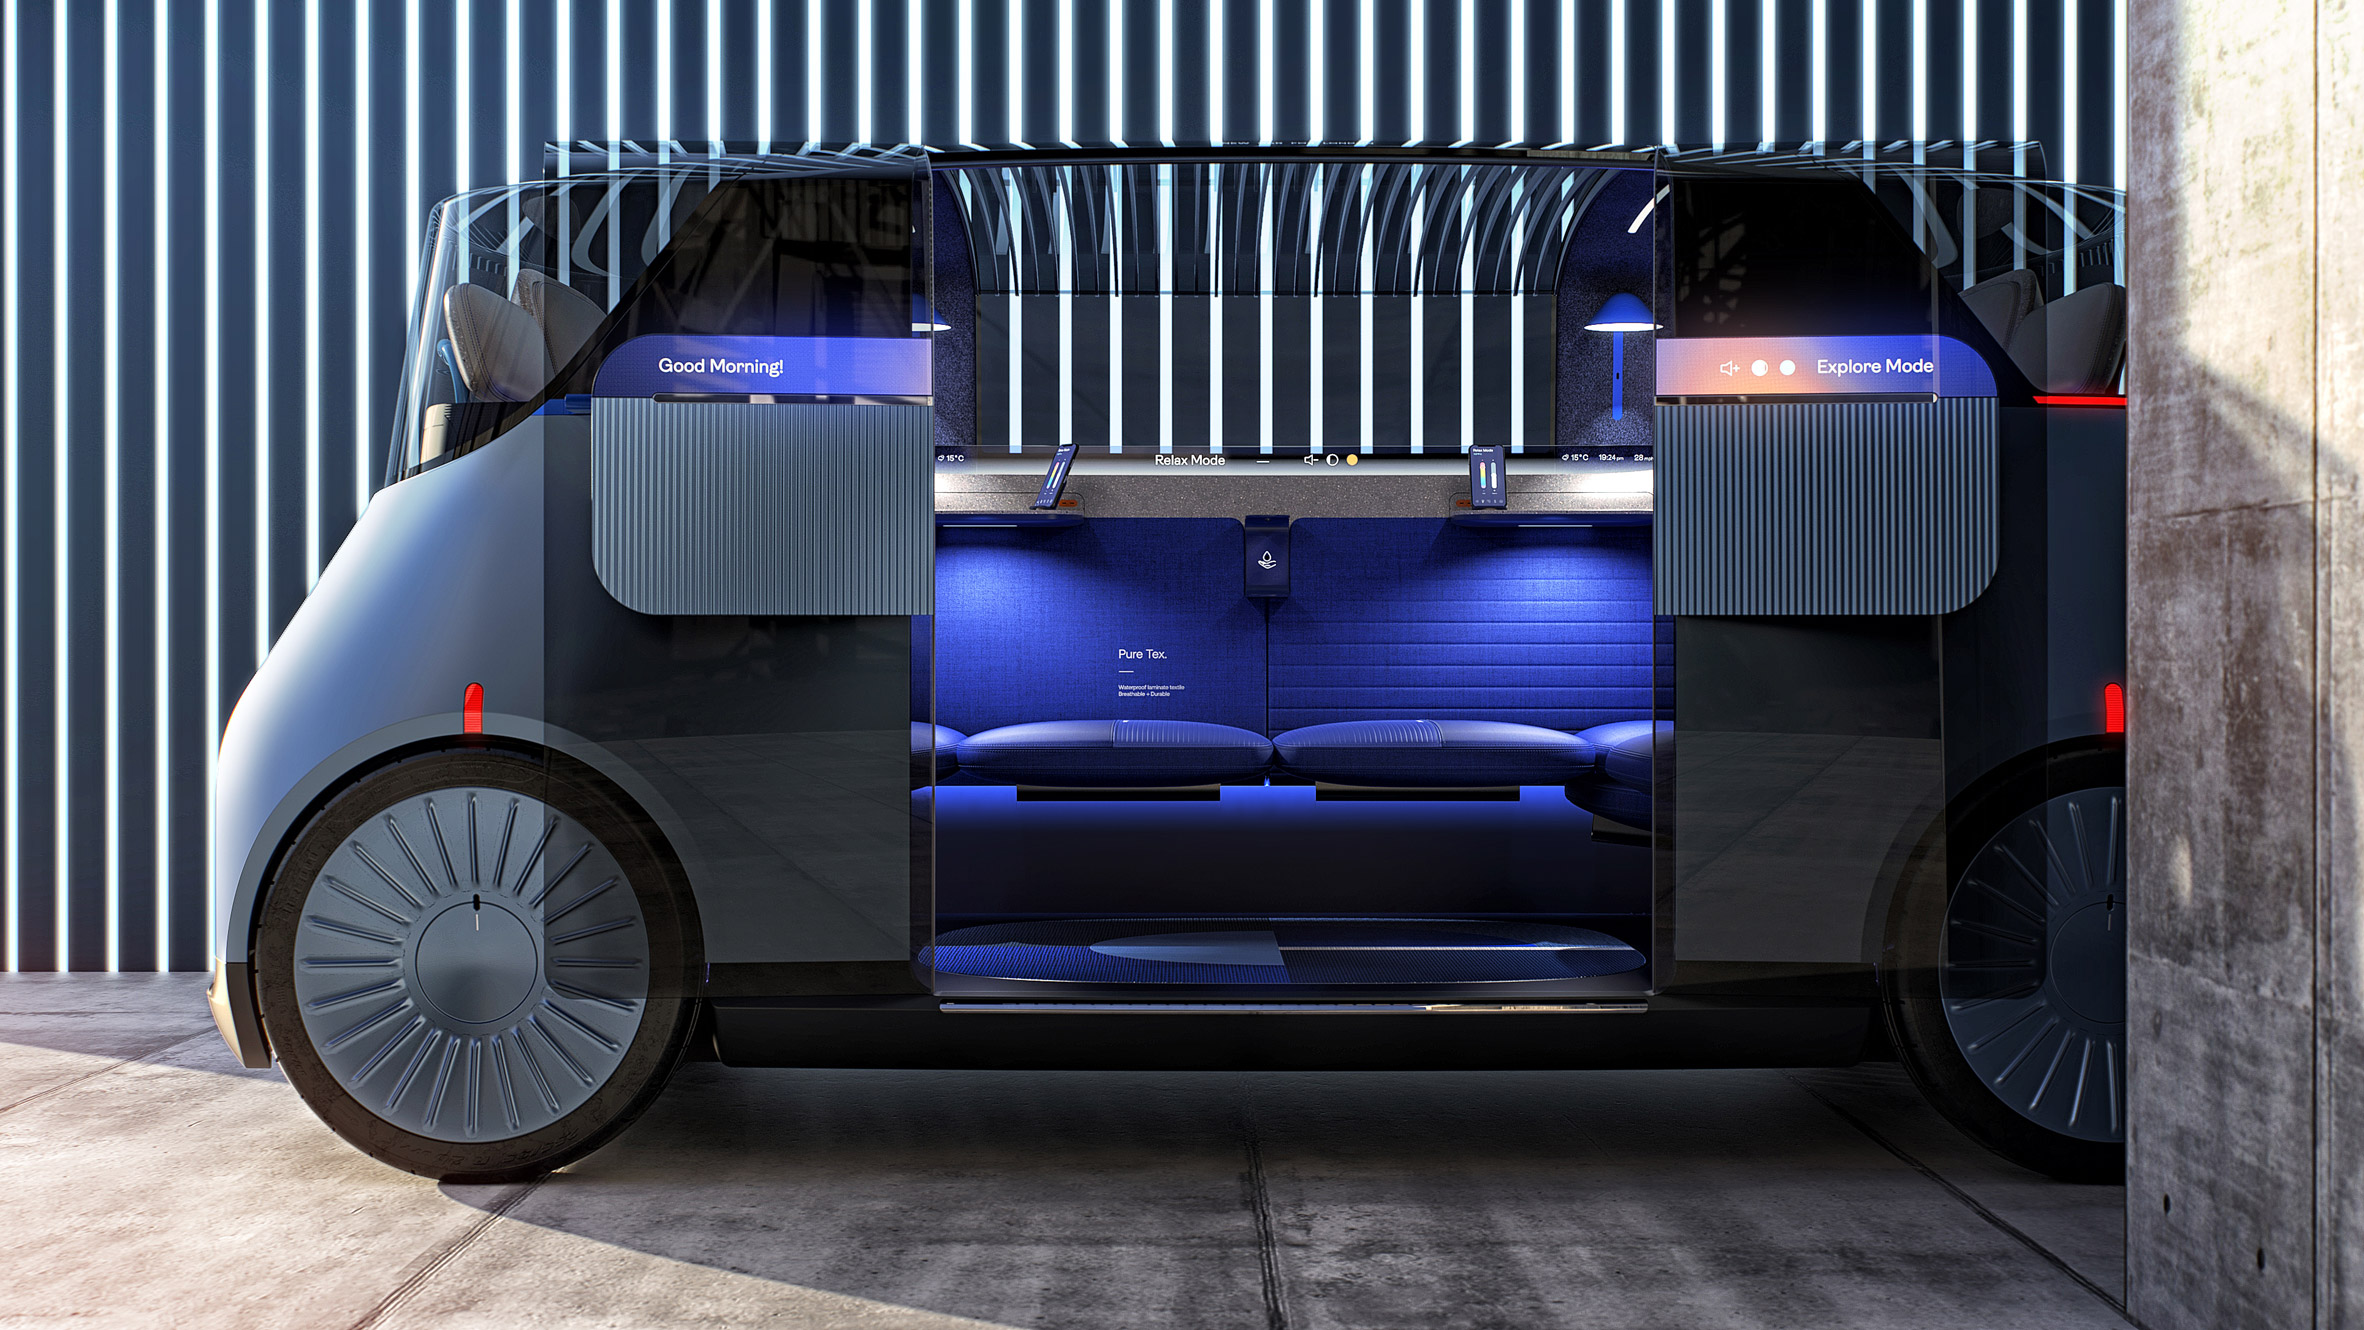 Brutalist architecture informed autonomous New Car for London taxi